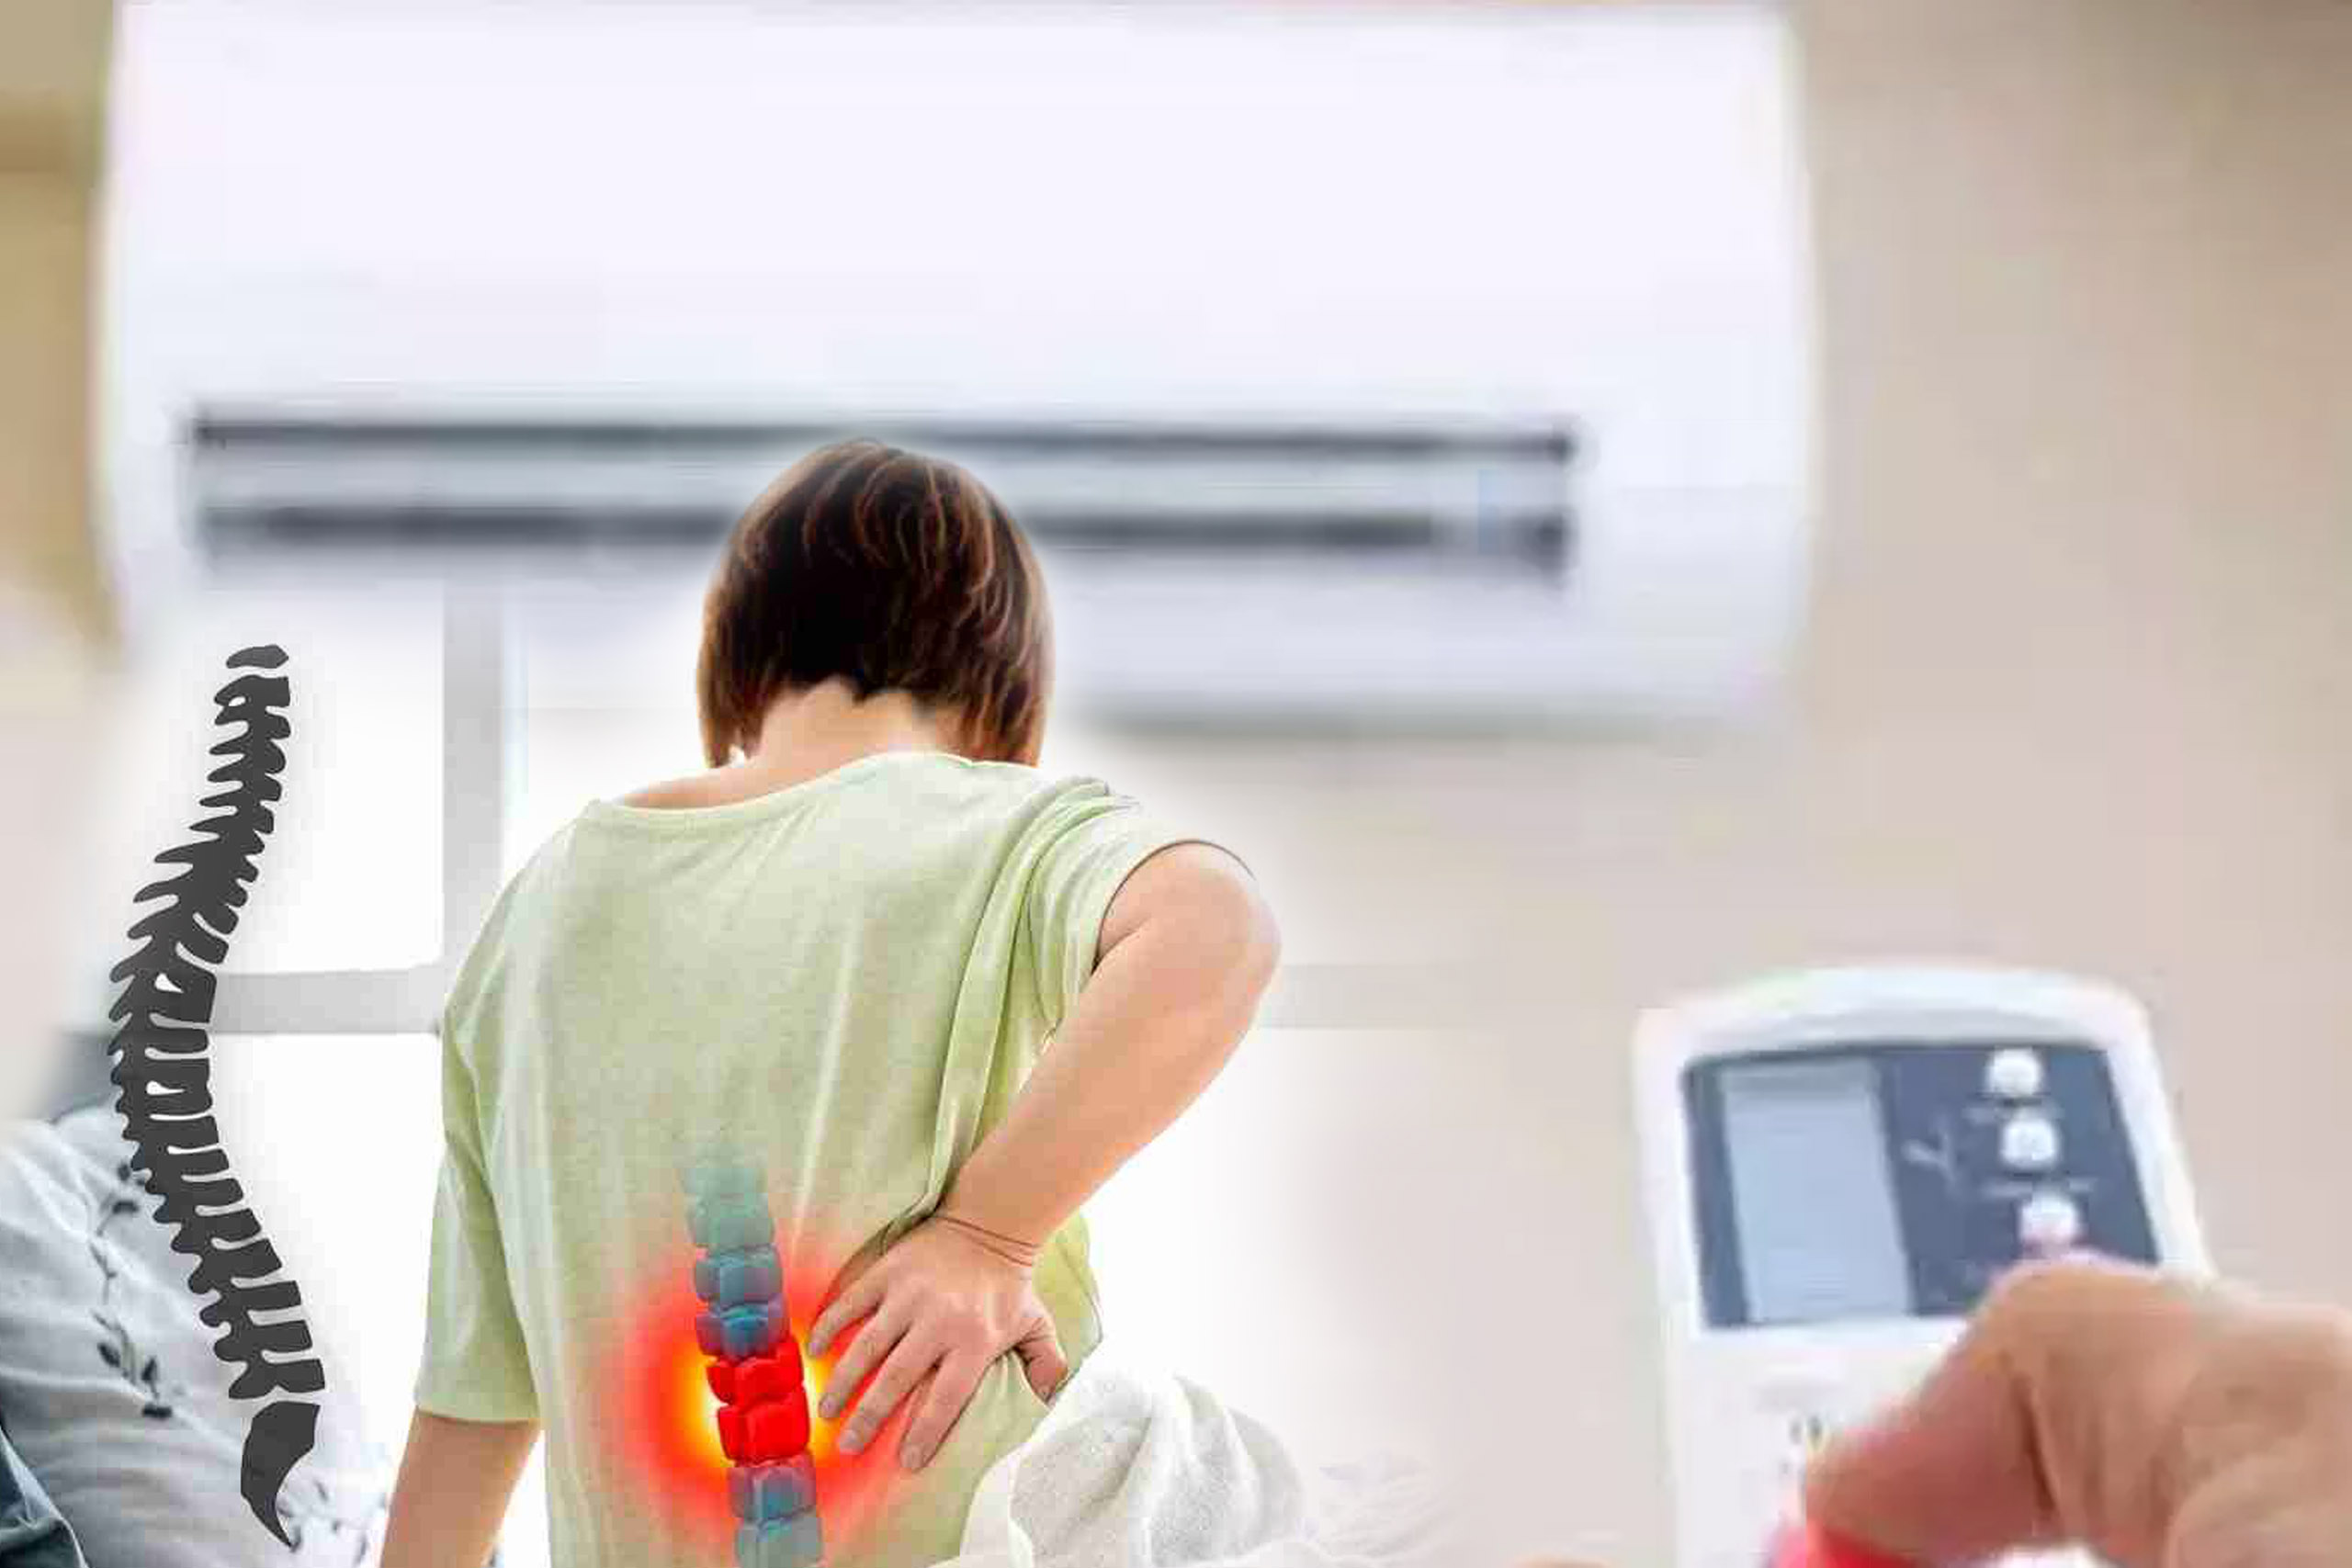 लम्बे समय तक AC में रहने से होता है हड्डियों में दर्द